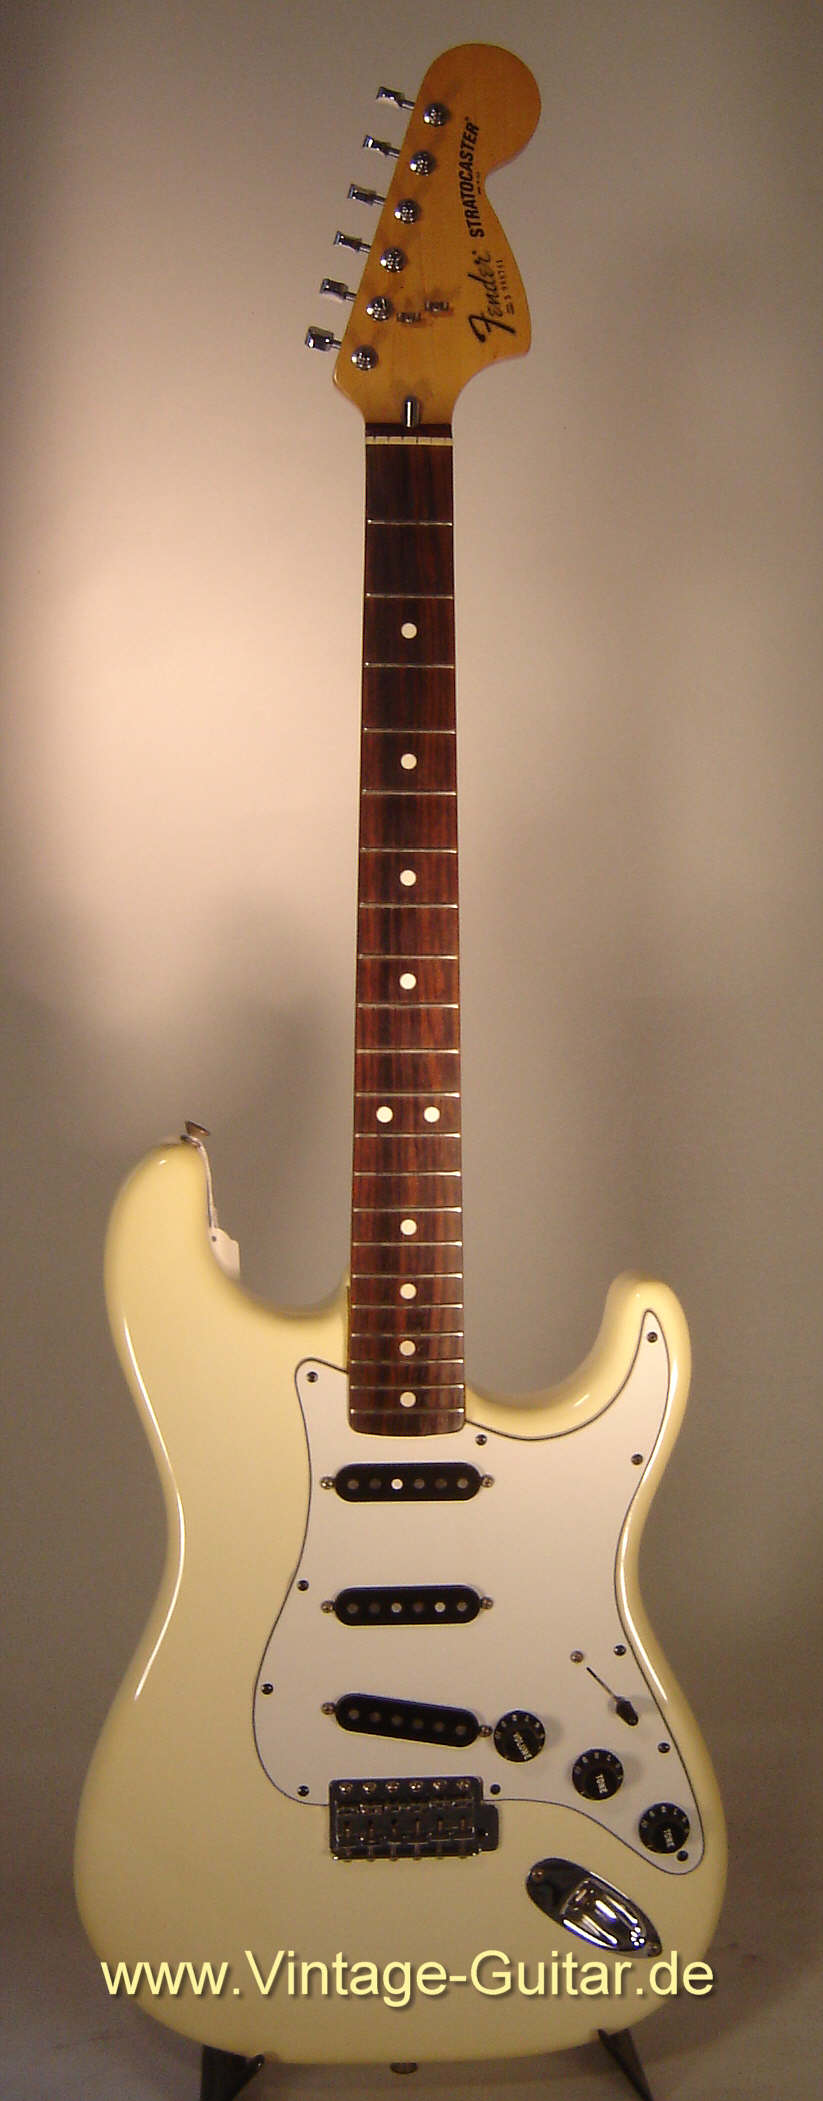 Fender_Stratocaster_1981_white.jpg